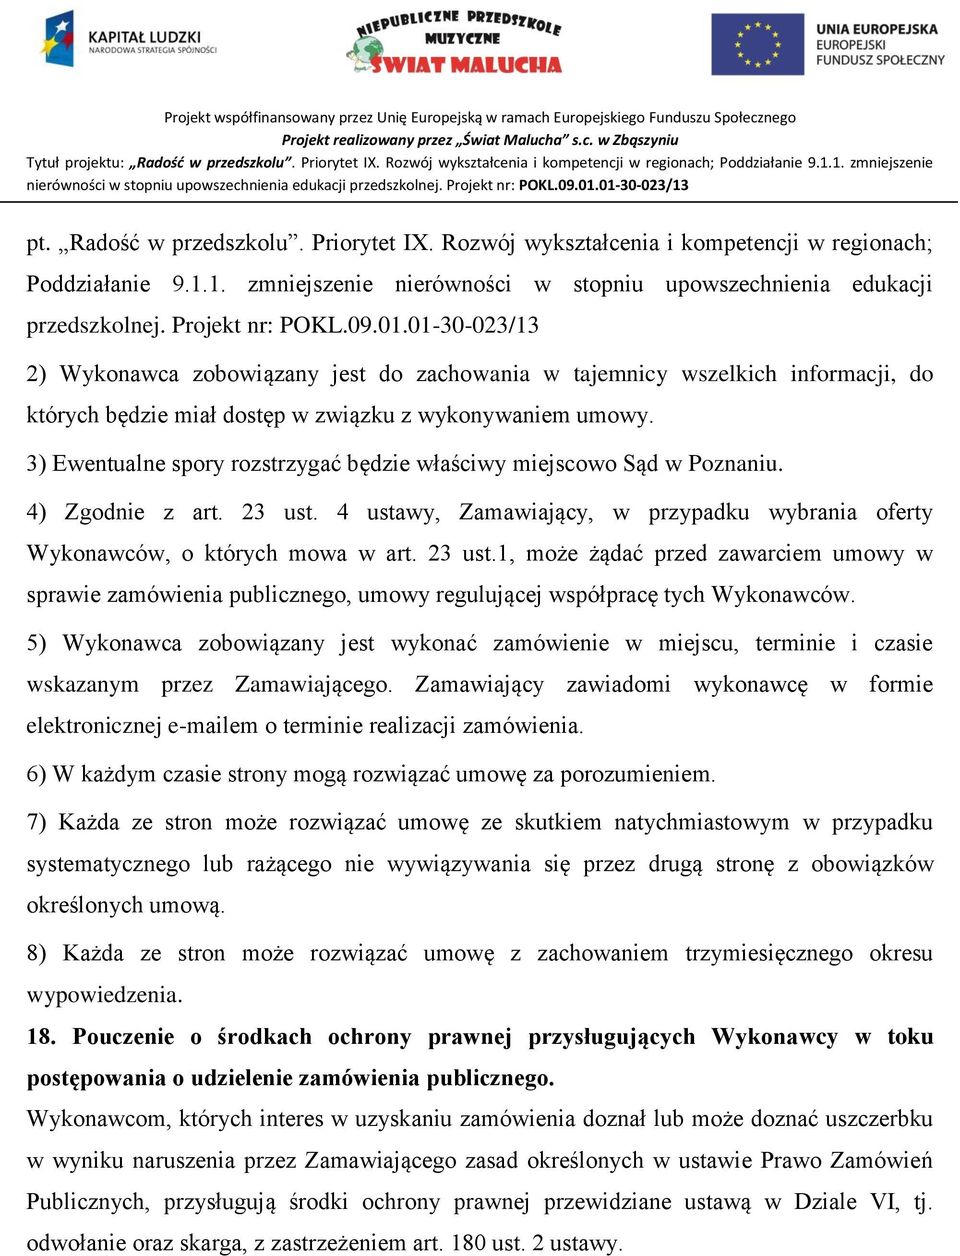 3) Ewentualne spory rozstrzygać będzie właściwy miejscowo Sąd w Poznaniu. 4) Zgodnie z art. 23 ust.